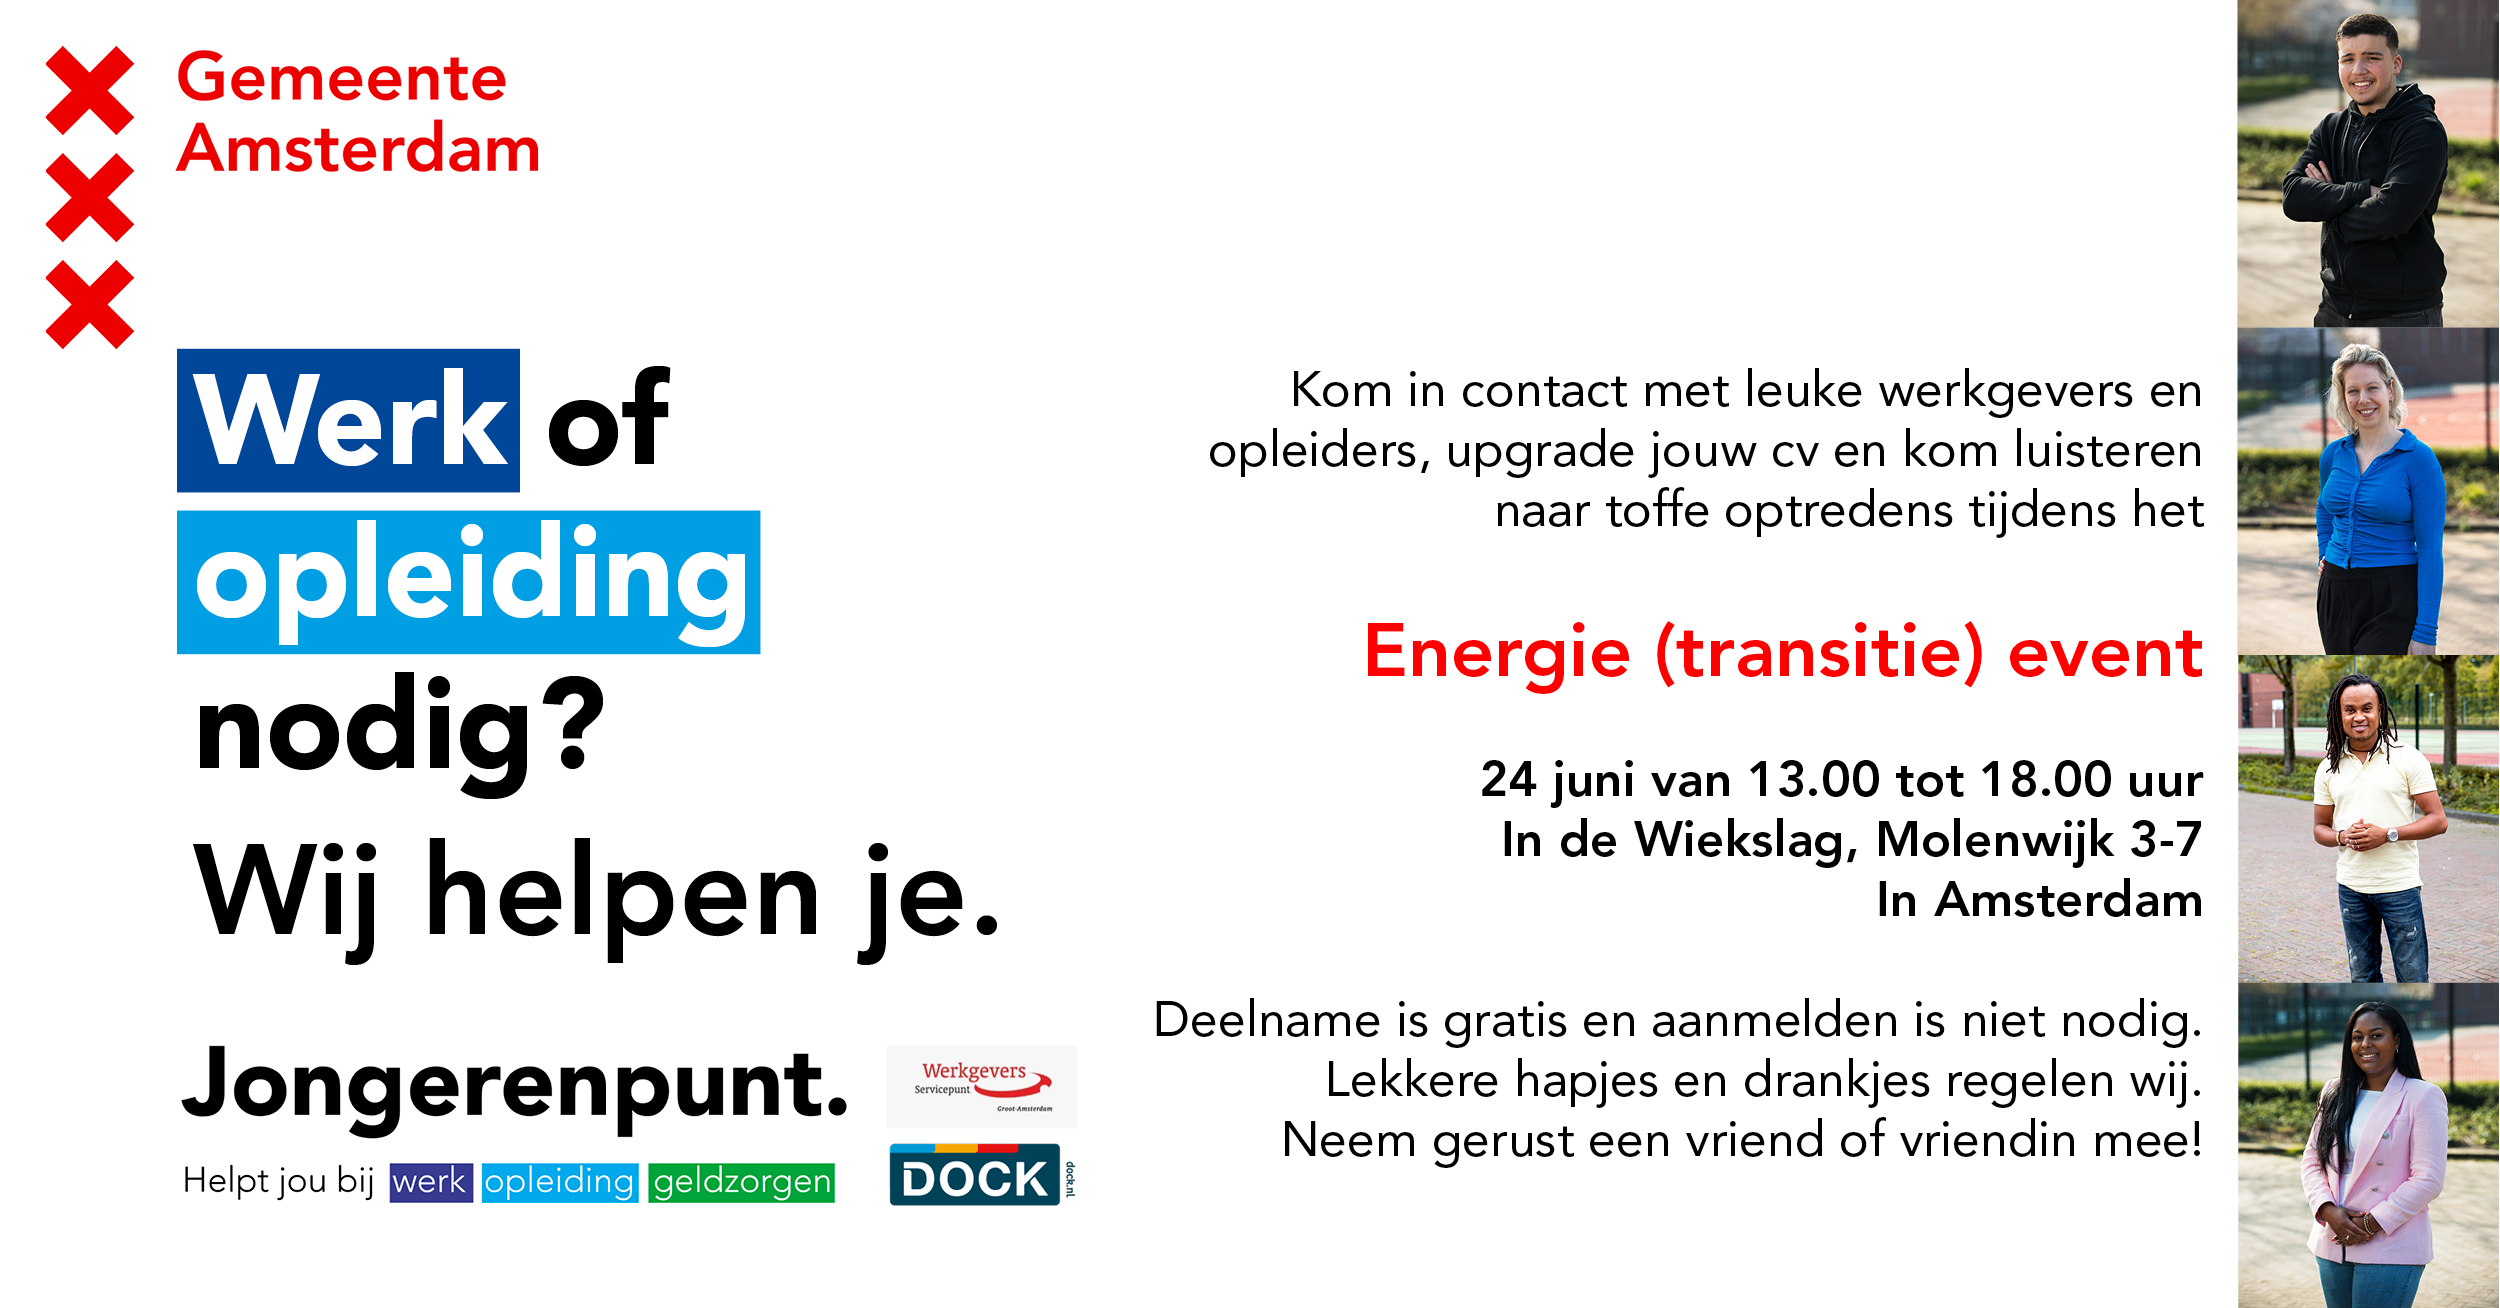 Energie (transitie) event Molenwijk 24 juni van 13.00-18.00 uur